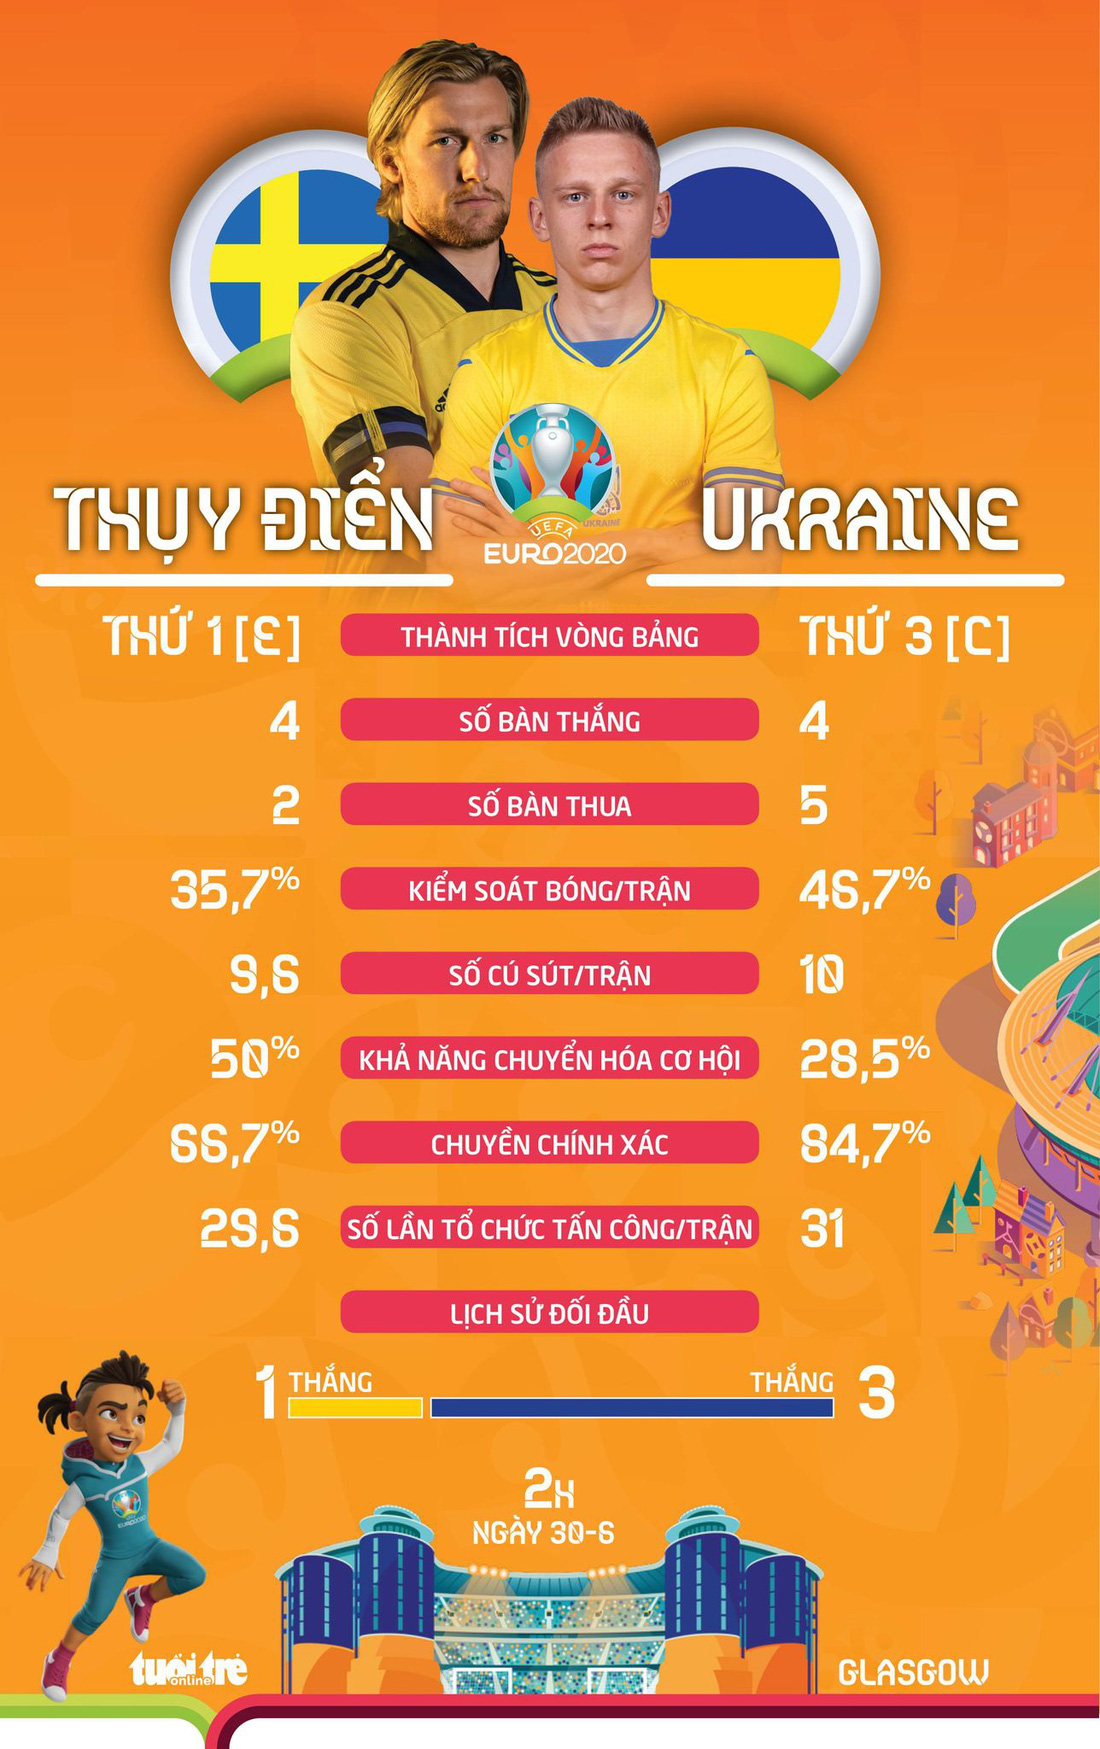 So sánh sức mạnh của Thụy Điển và Ukraine ở vòng 16 đội Euro 2020 - Ảnh 1.